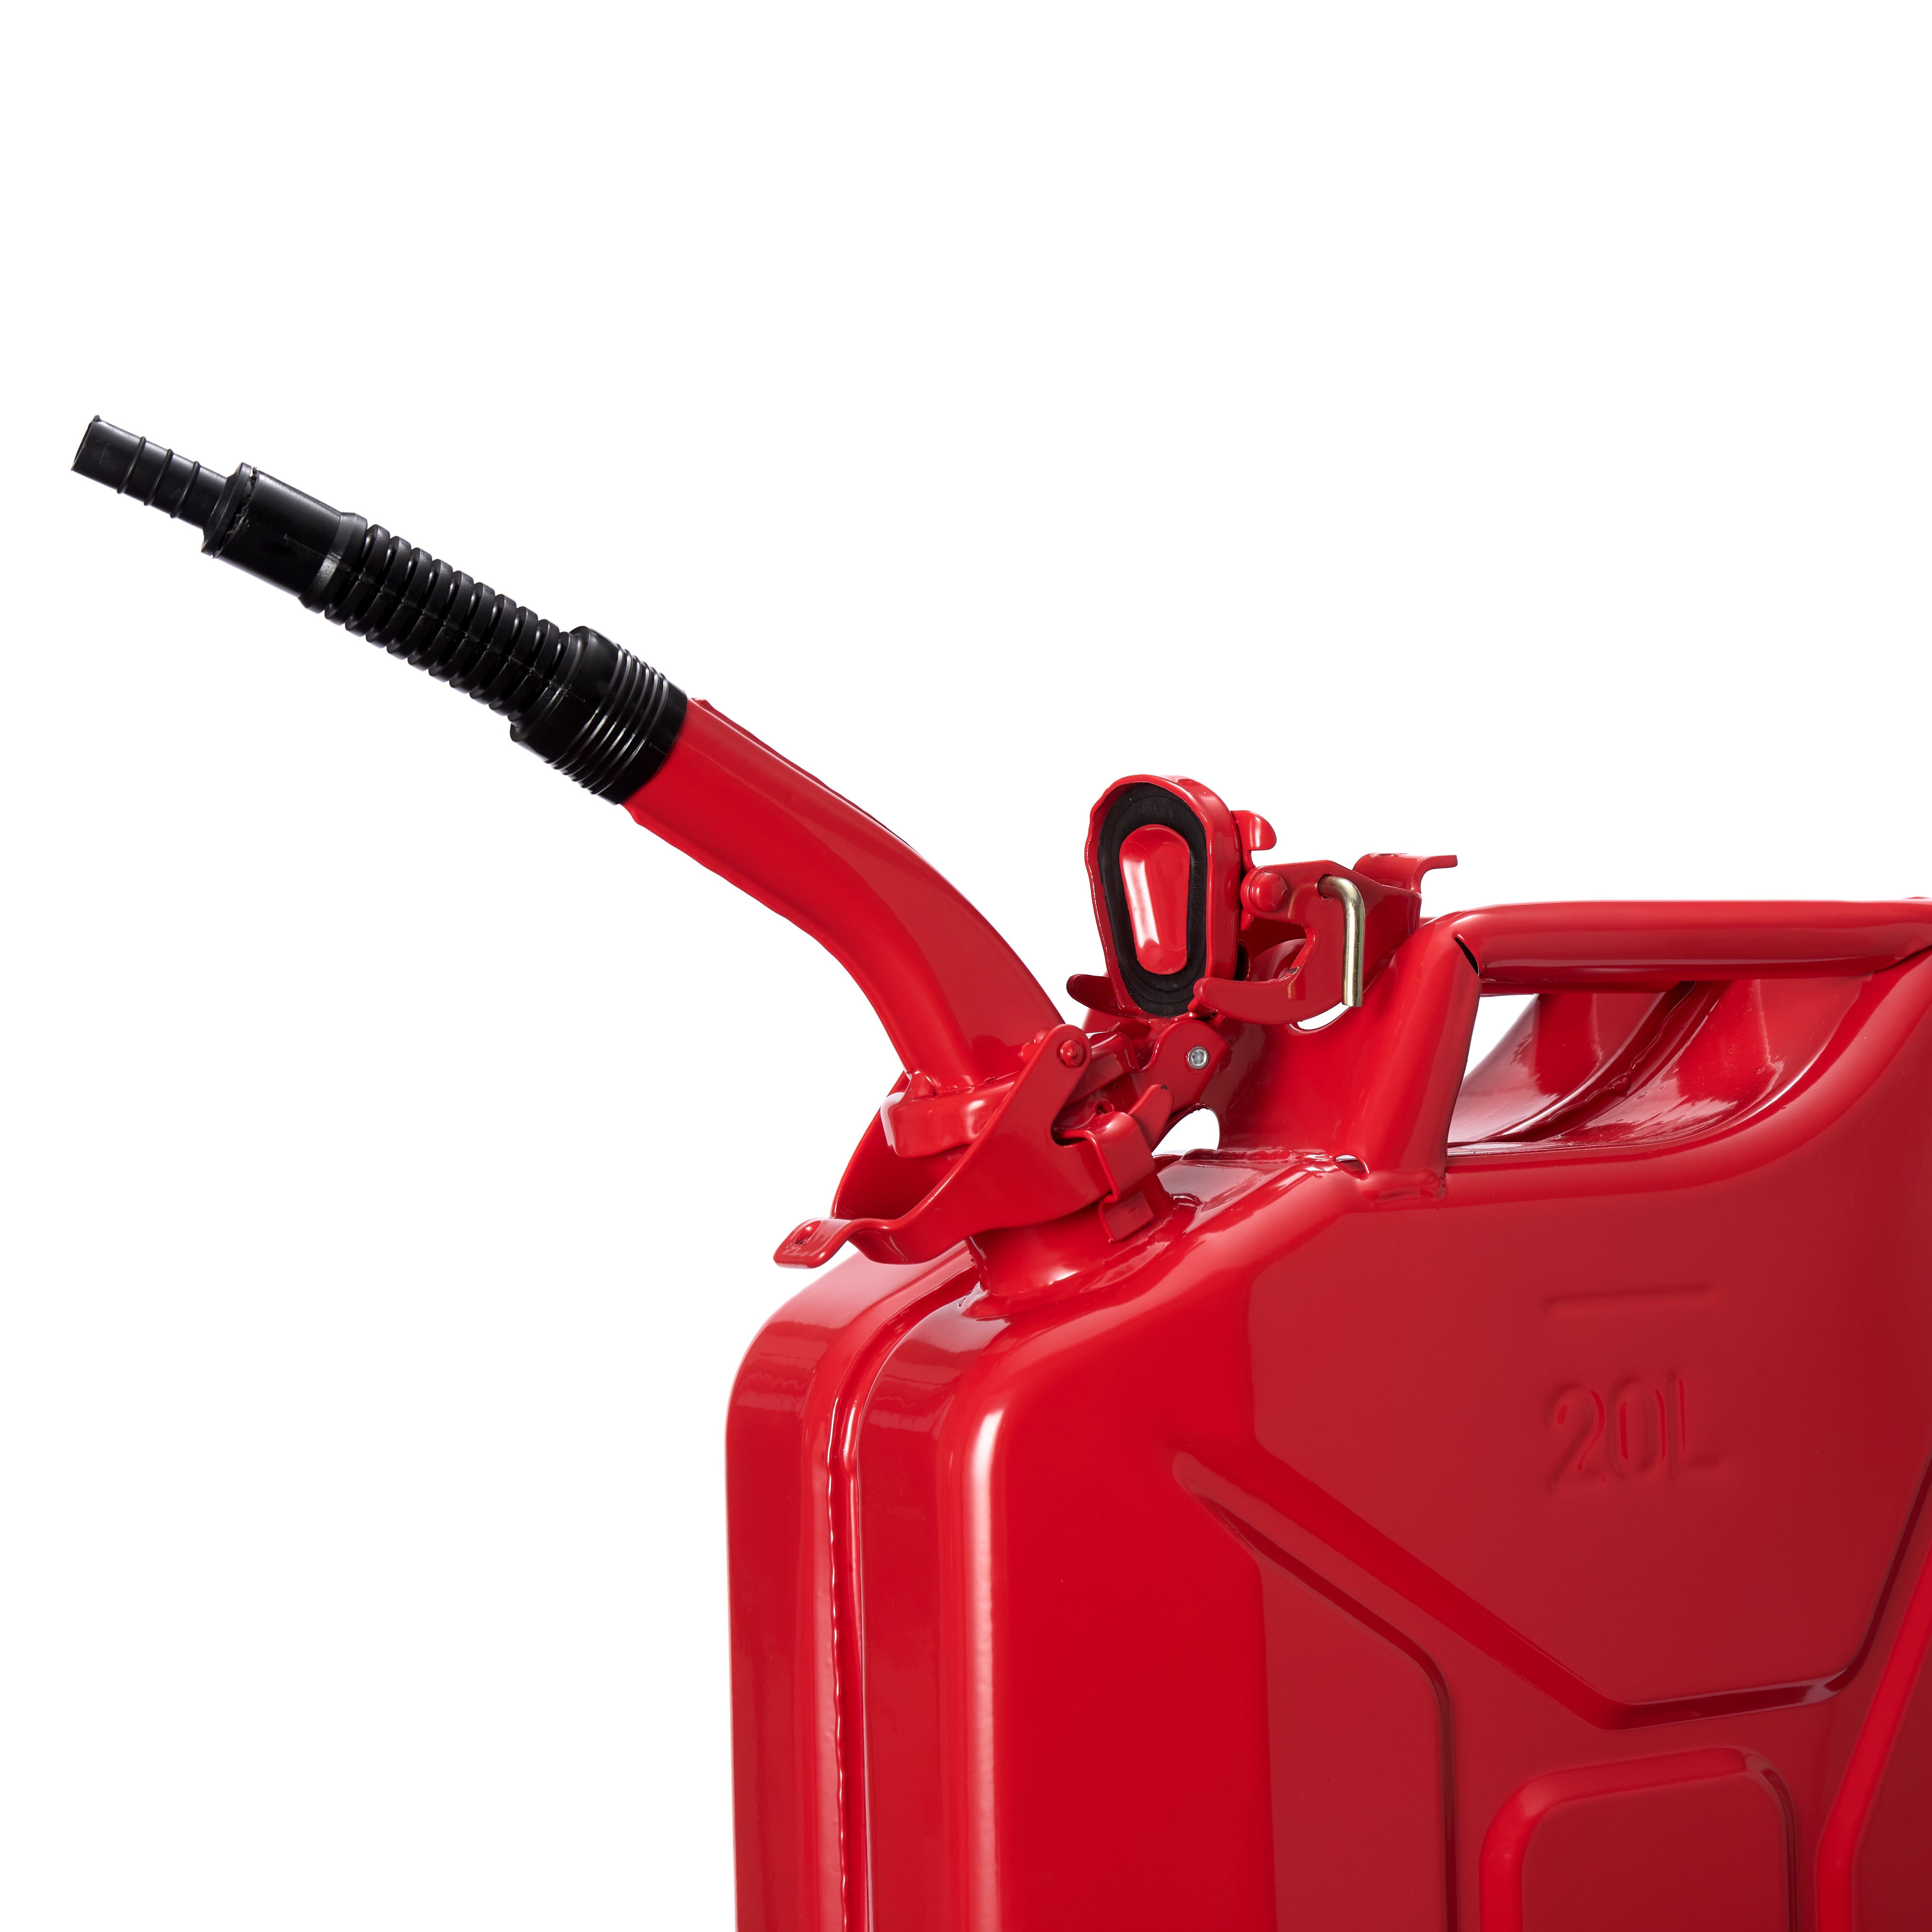 Flexibler Ausgießer für Diesel & Benzin für Metall-Kraftstoffkanister - Rot